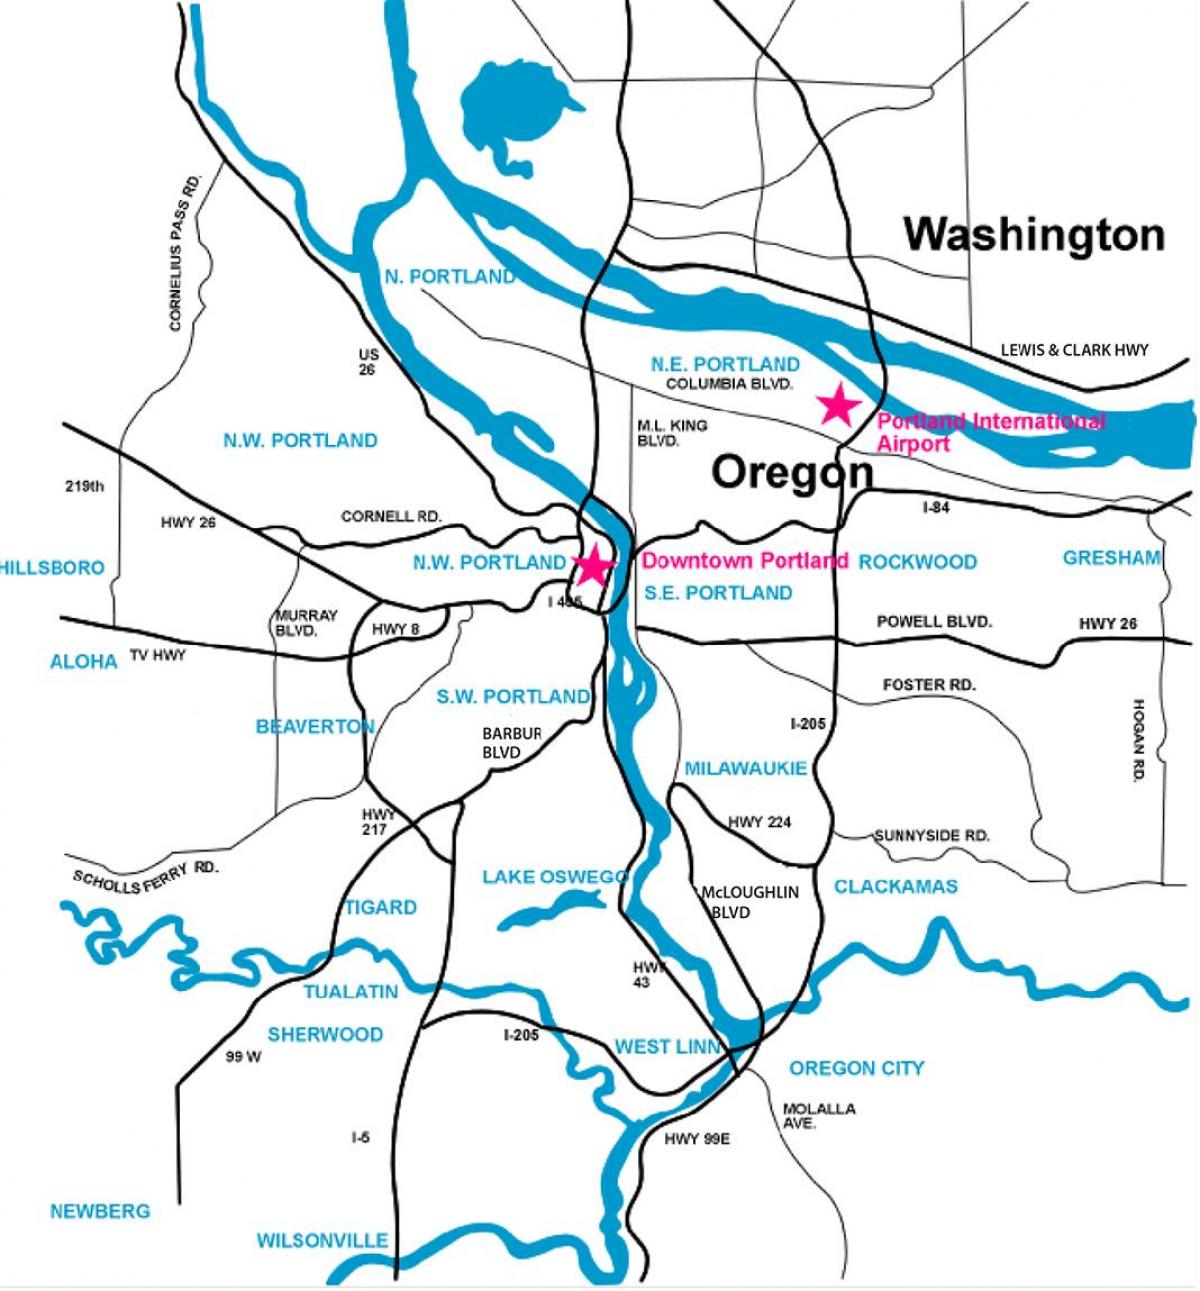 Portland-området kart